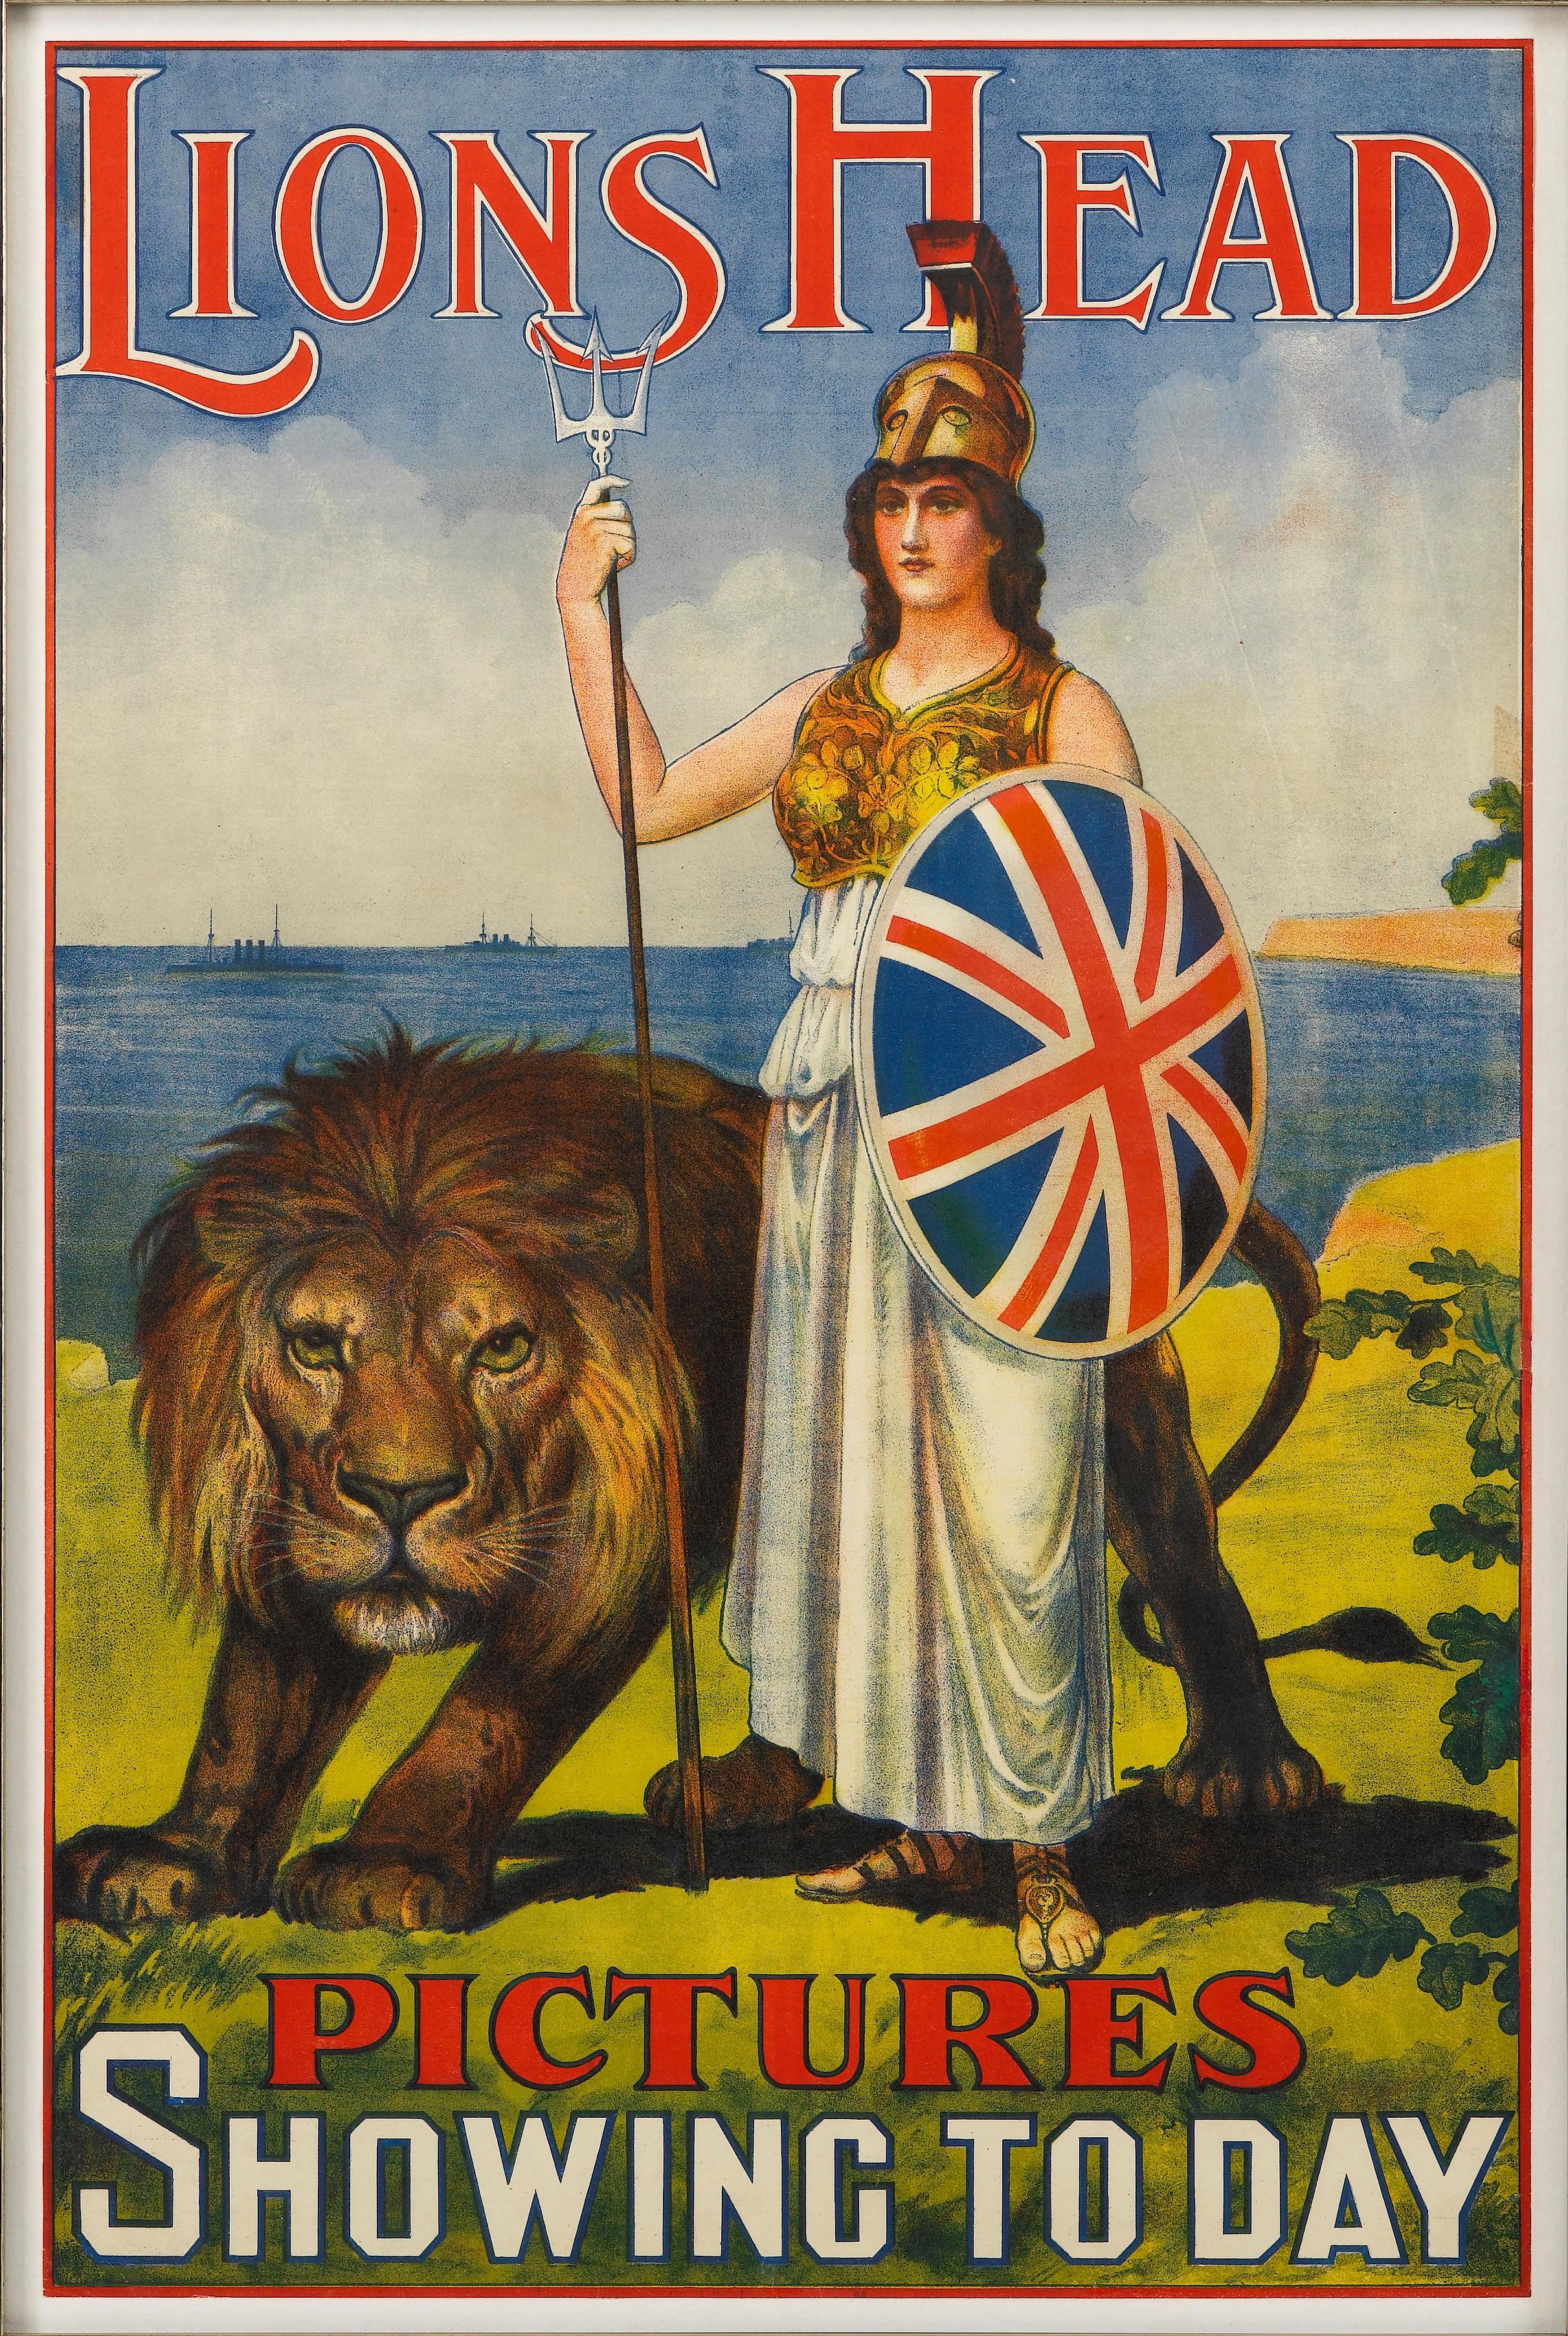 Dies ist ein schönes, originales Werbeplakat für Lions Head Pictures. Das Plakat stammt aus der Zeit um 1911. Das Plakat wurde von einem unbekannten Künstler entworfen.

Das Plakat zeigt Britannia, ein weibliches Abbild der britischen Inseln. Hier